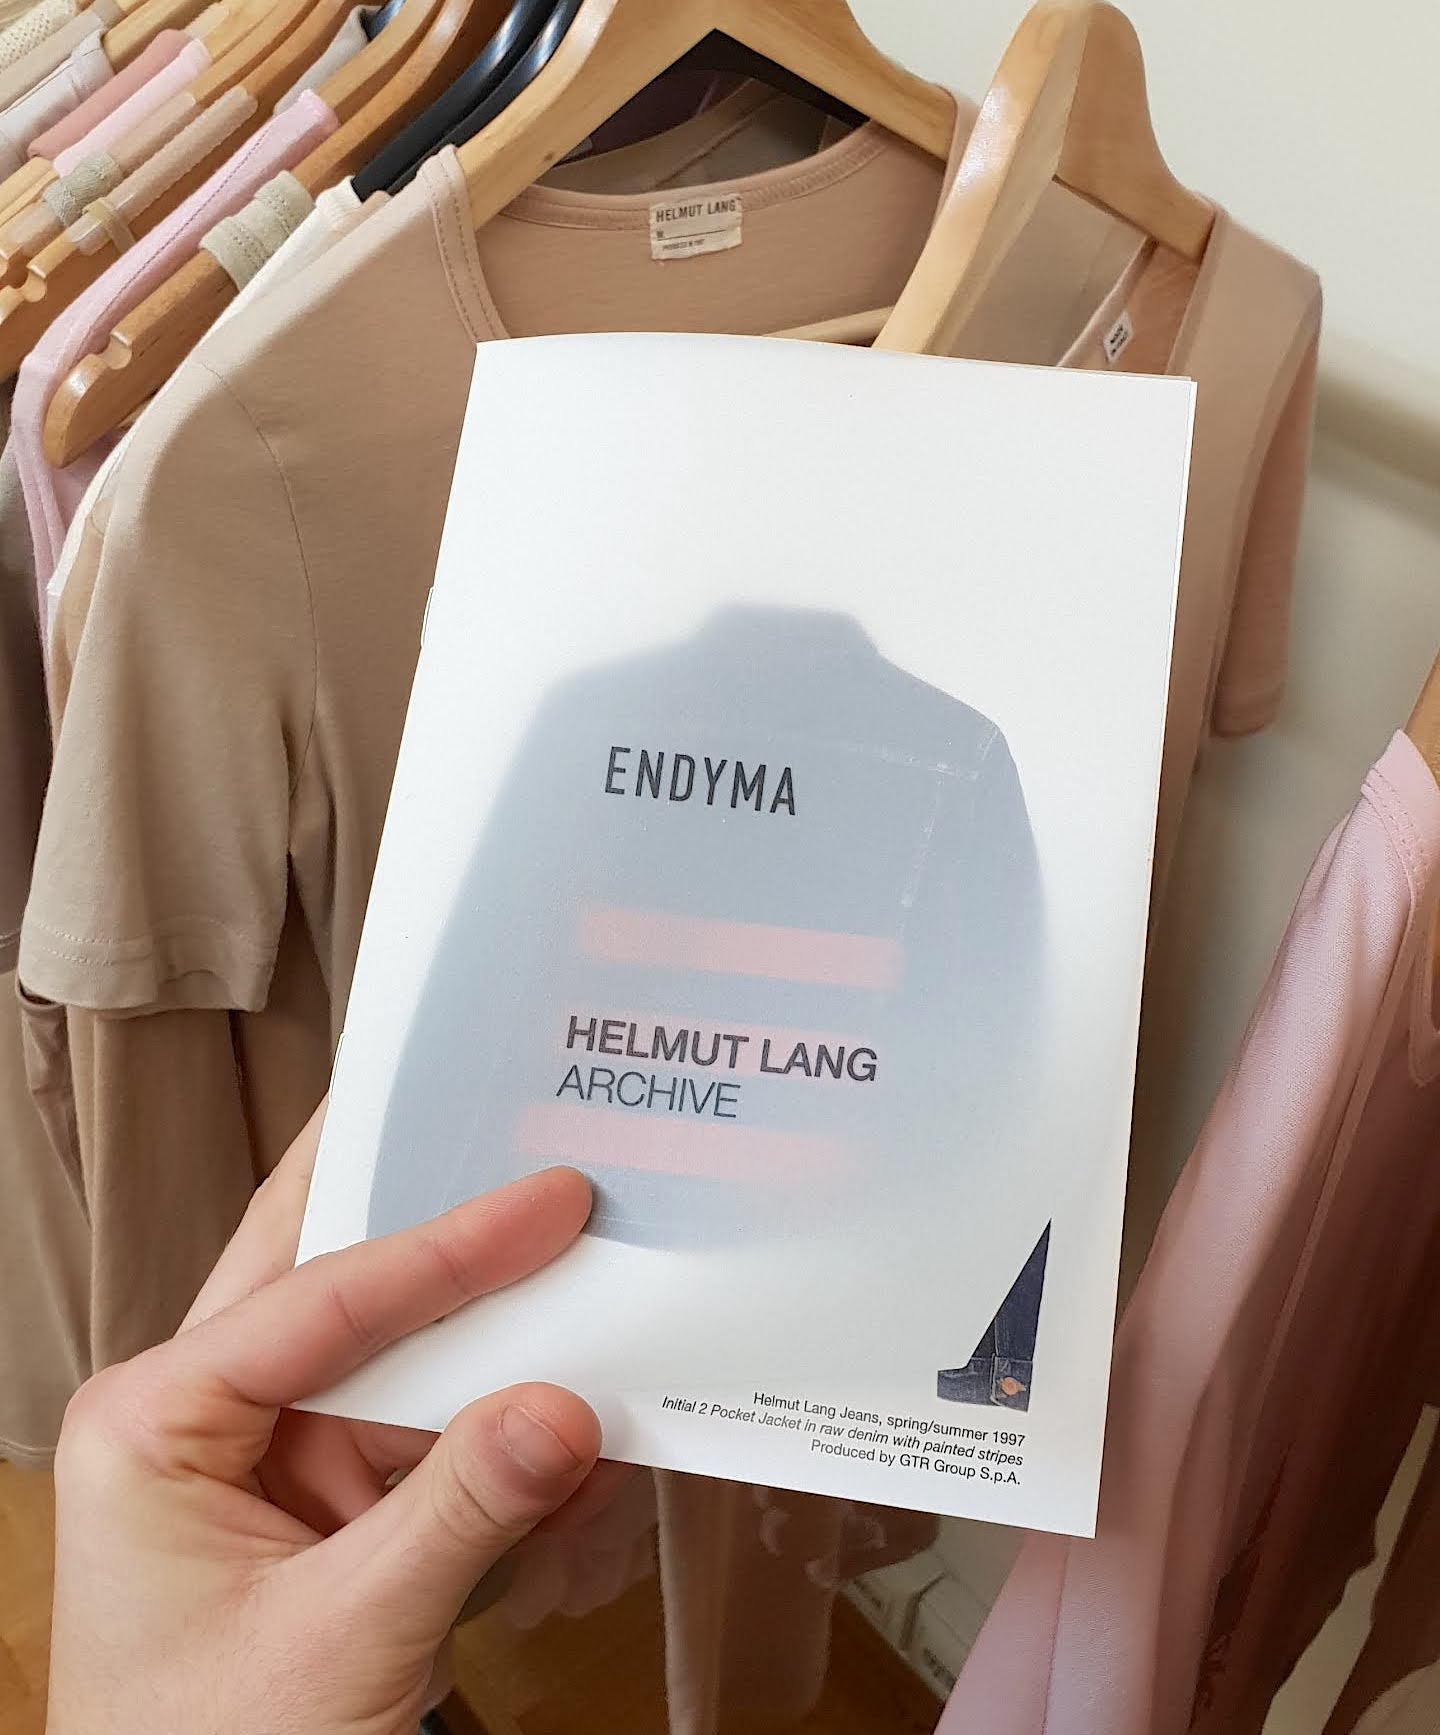 Shop Helmut Lang Archive at ENDYMA